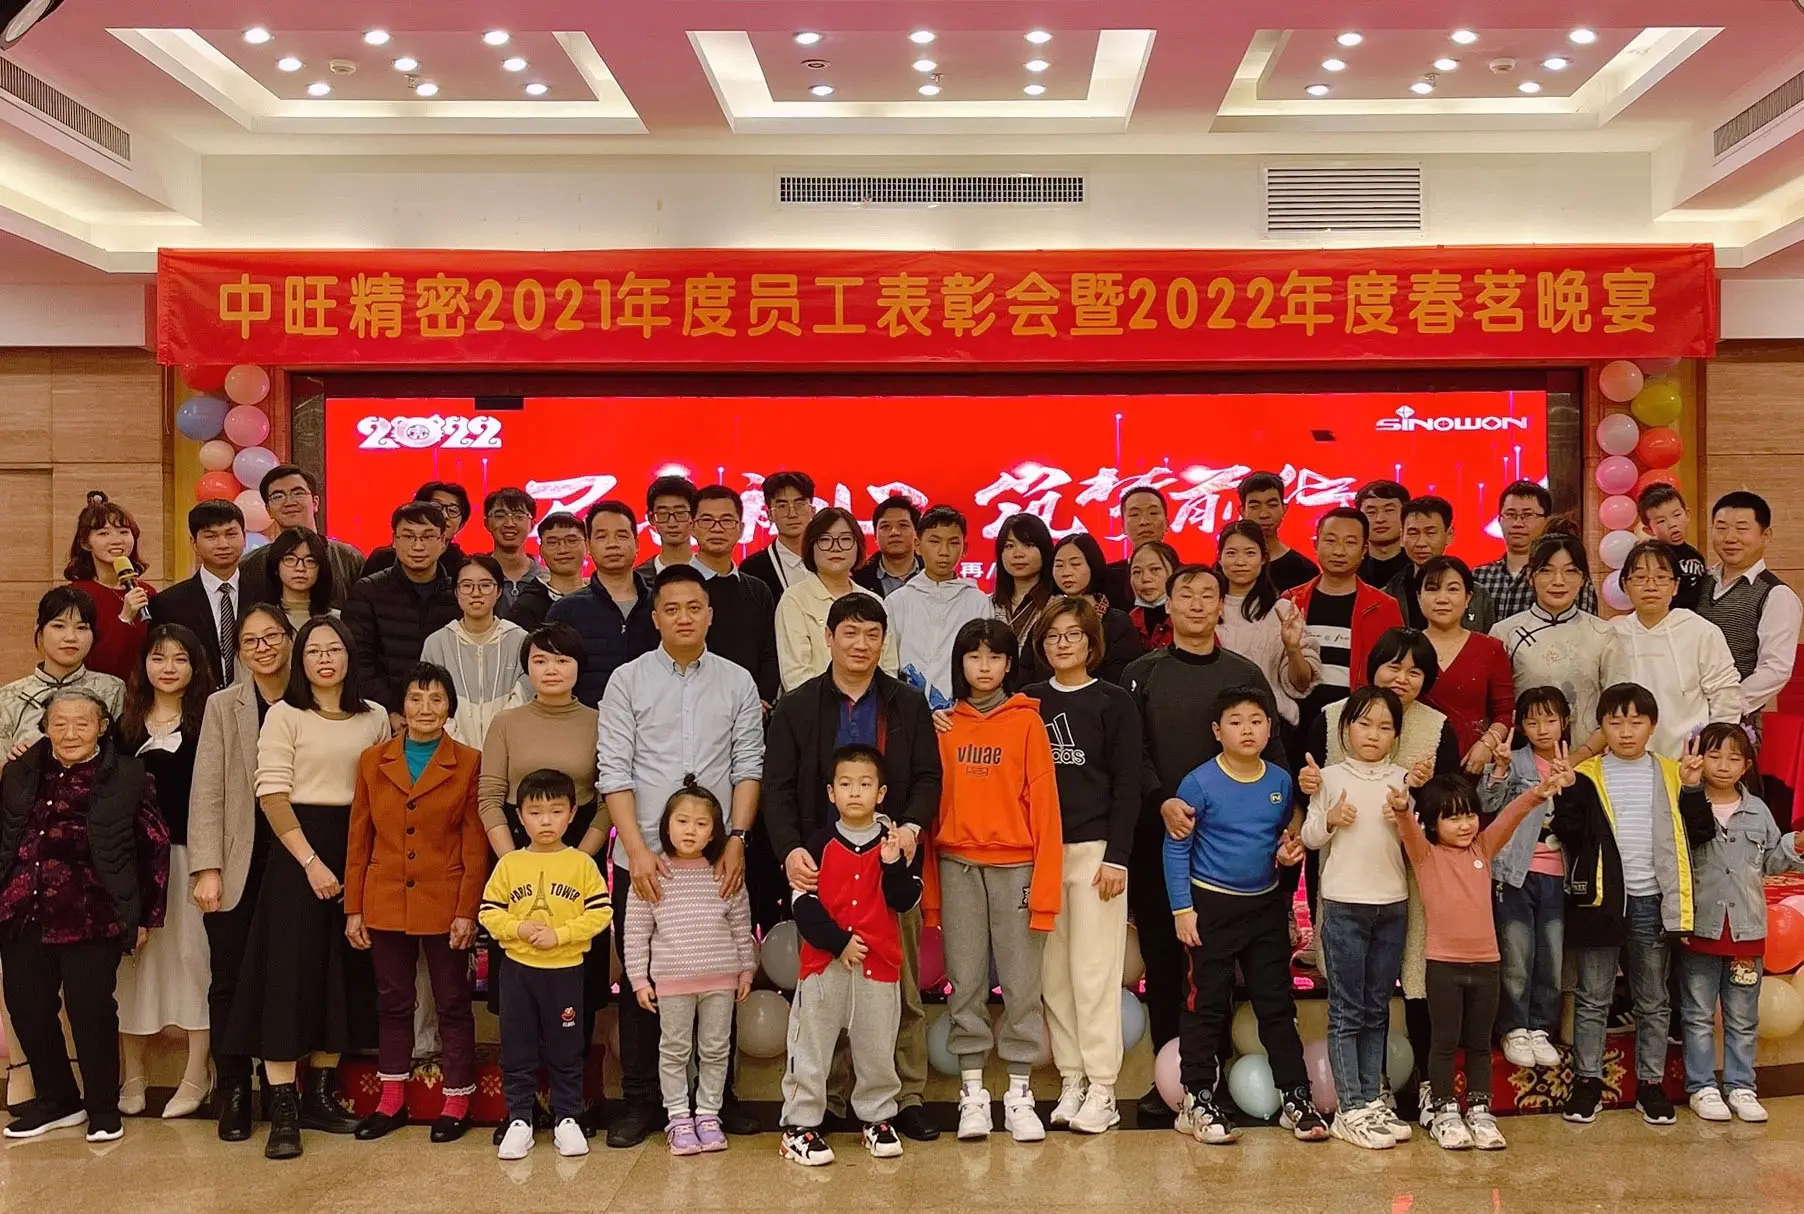 Cérémonie de reconnaissance des employés de Xinyuan en 2021 et banquet du printemps de Xinyuan en 2022